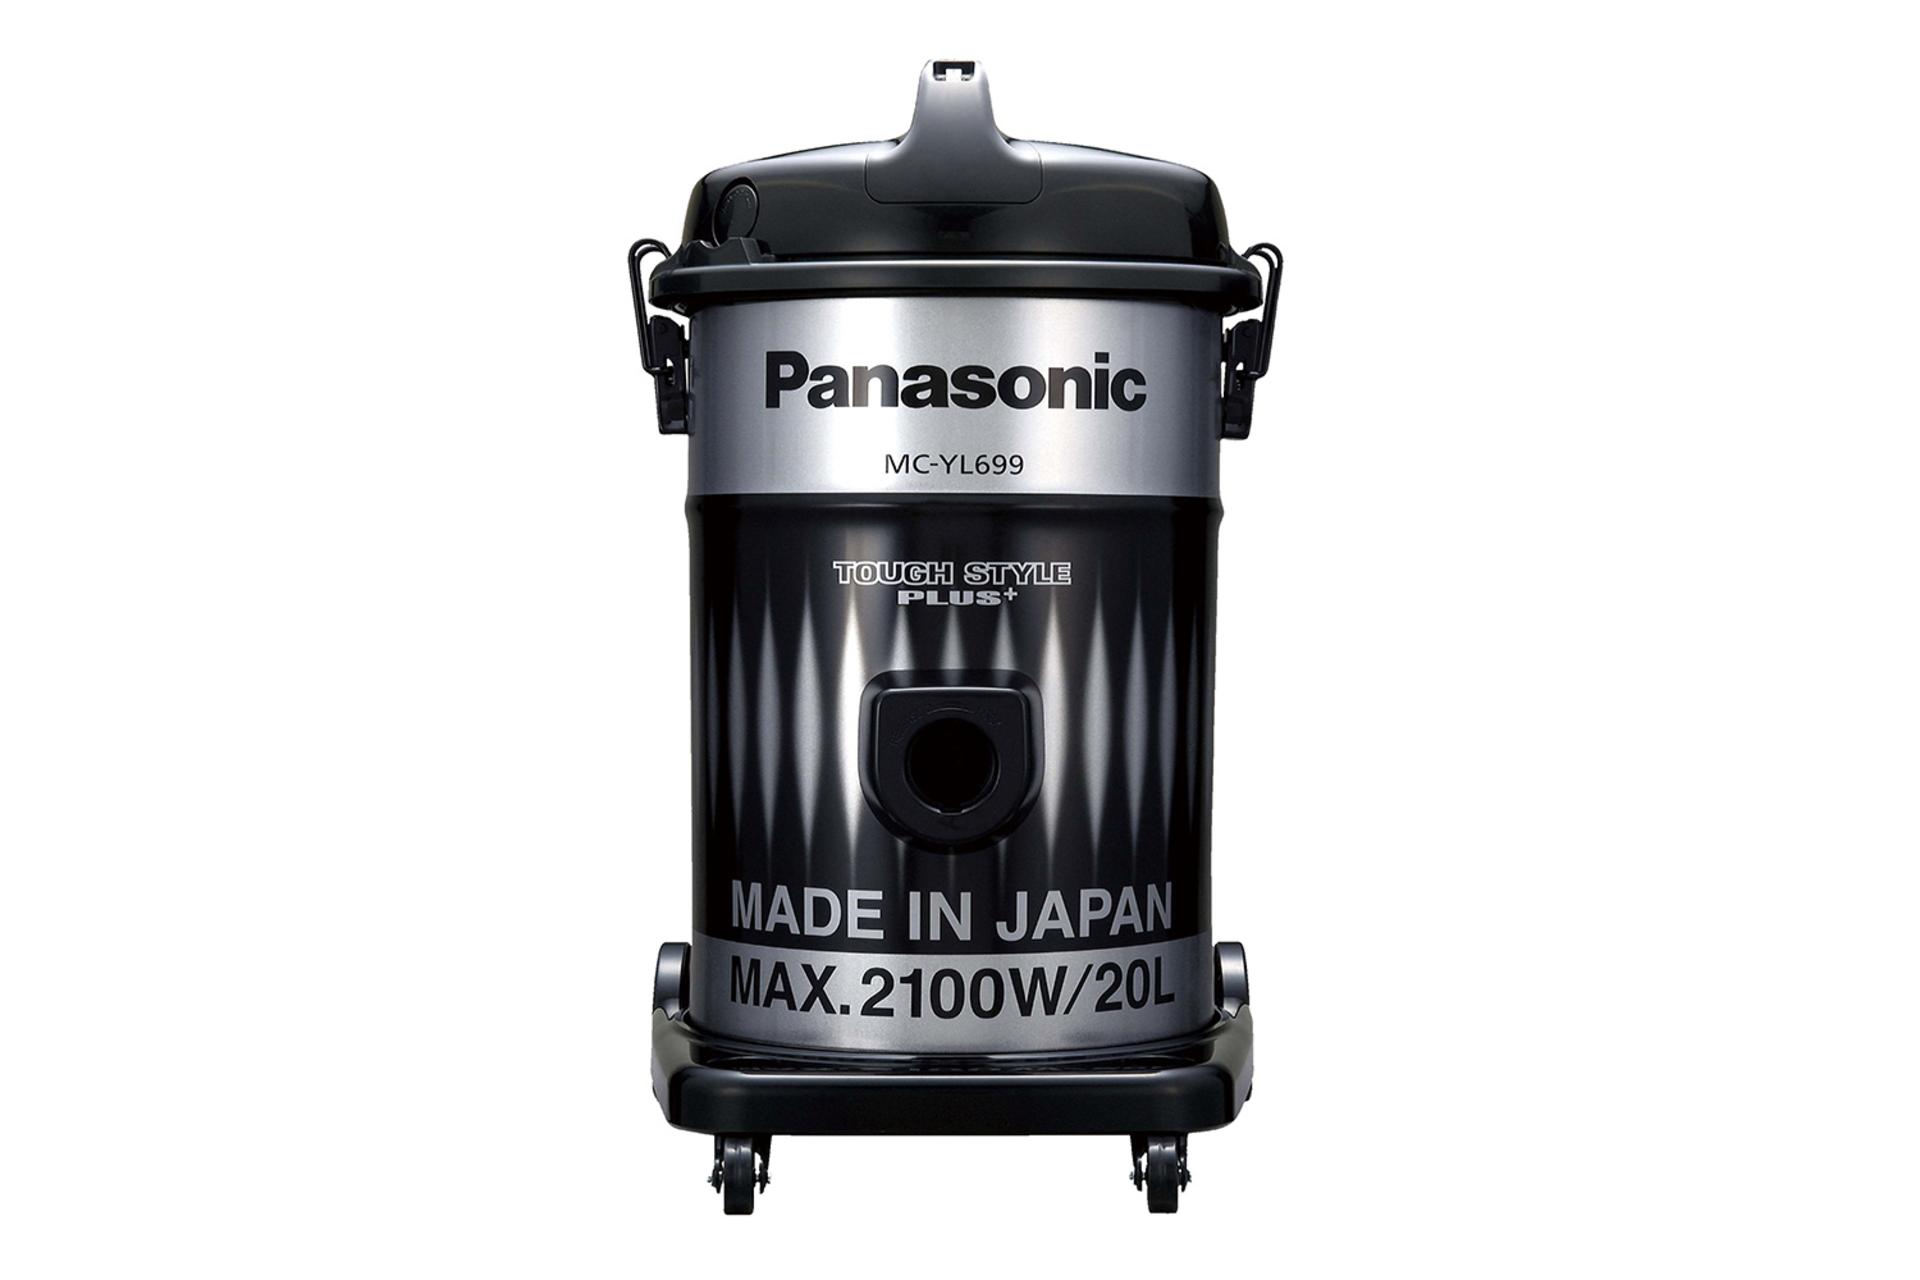 جاروبرقی پاناسونیک Panasonic MC-YL699